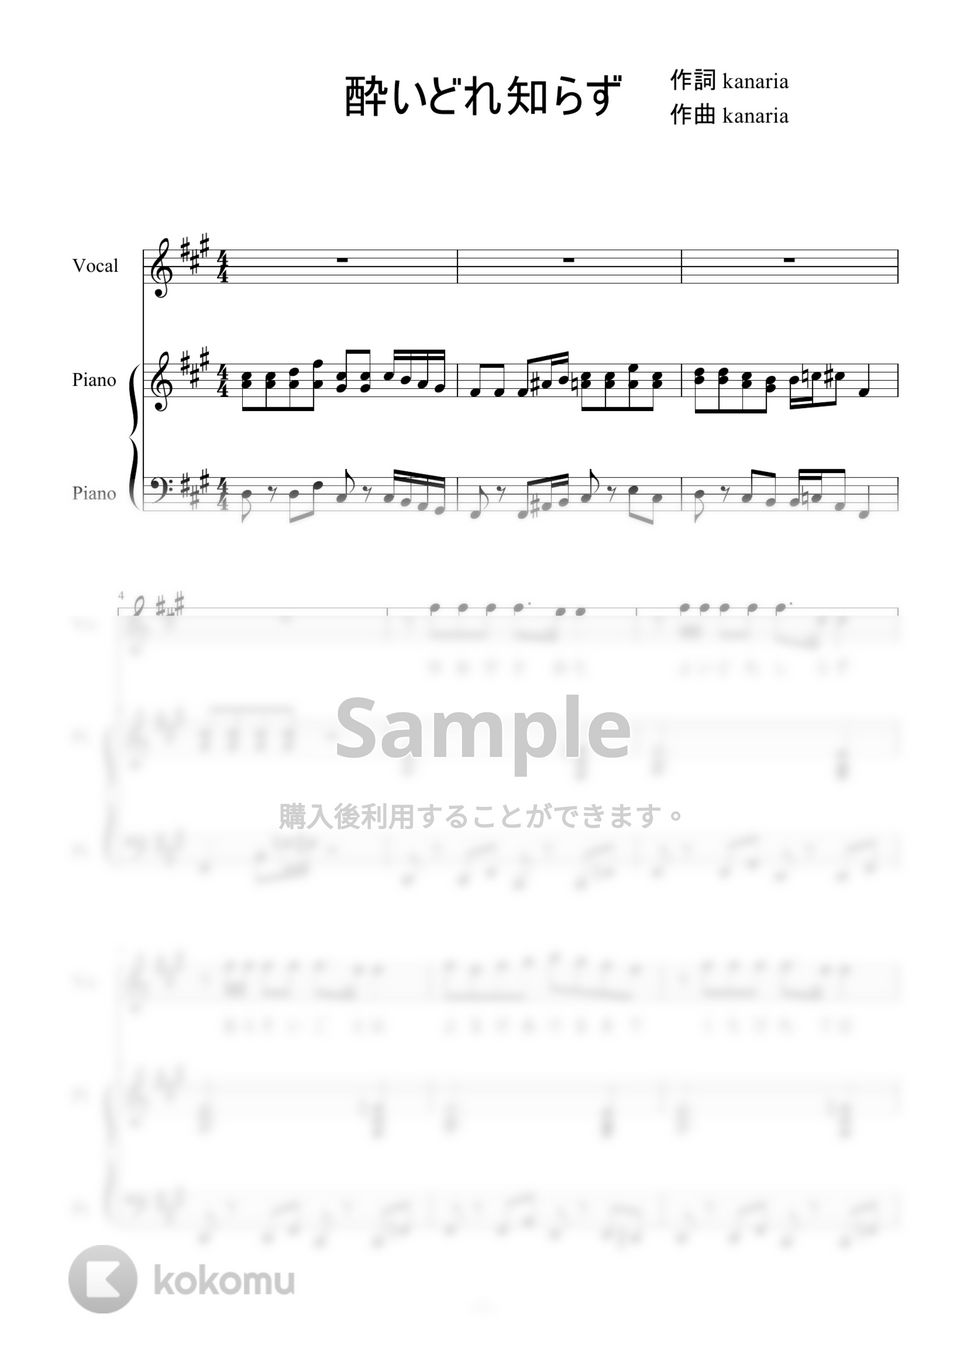 Kanaria - 酔いどれ知らず (ピアノ弾き語り) by 二次元楽譜製作所